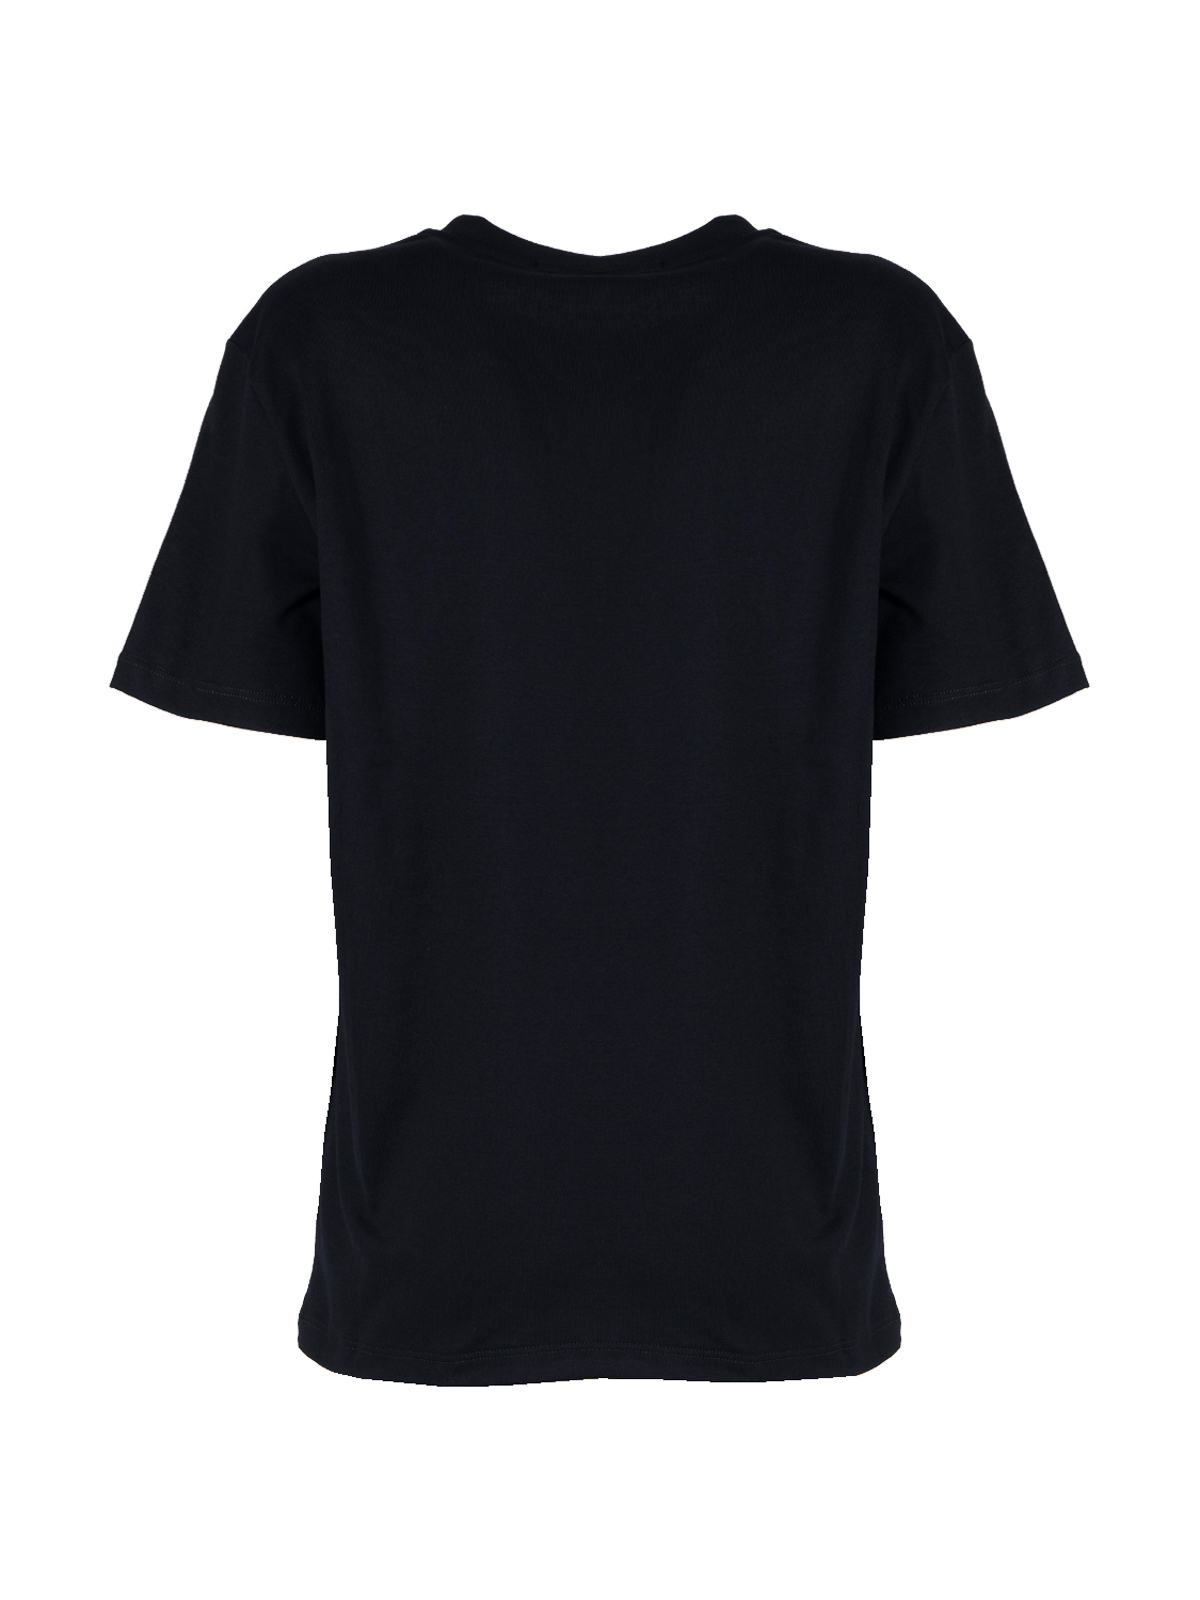 Shop Msgm Paradise Club Tshirt In Black